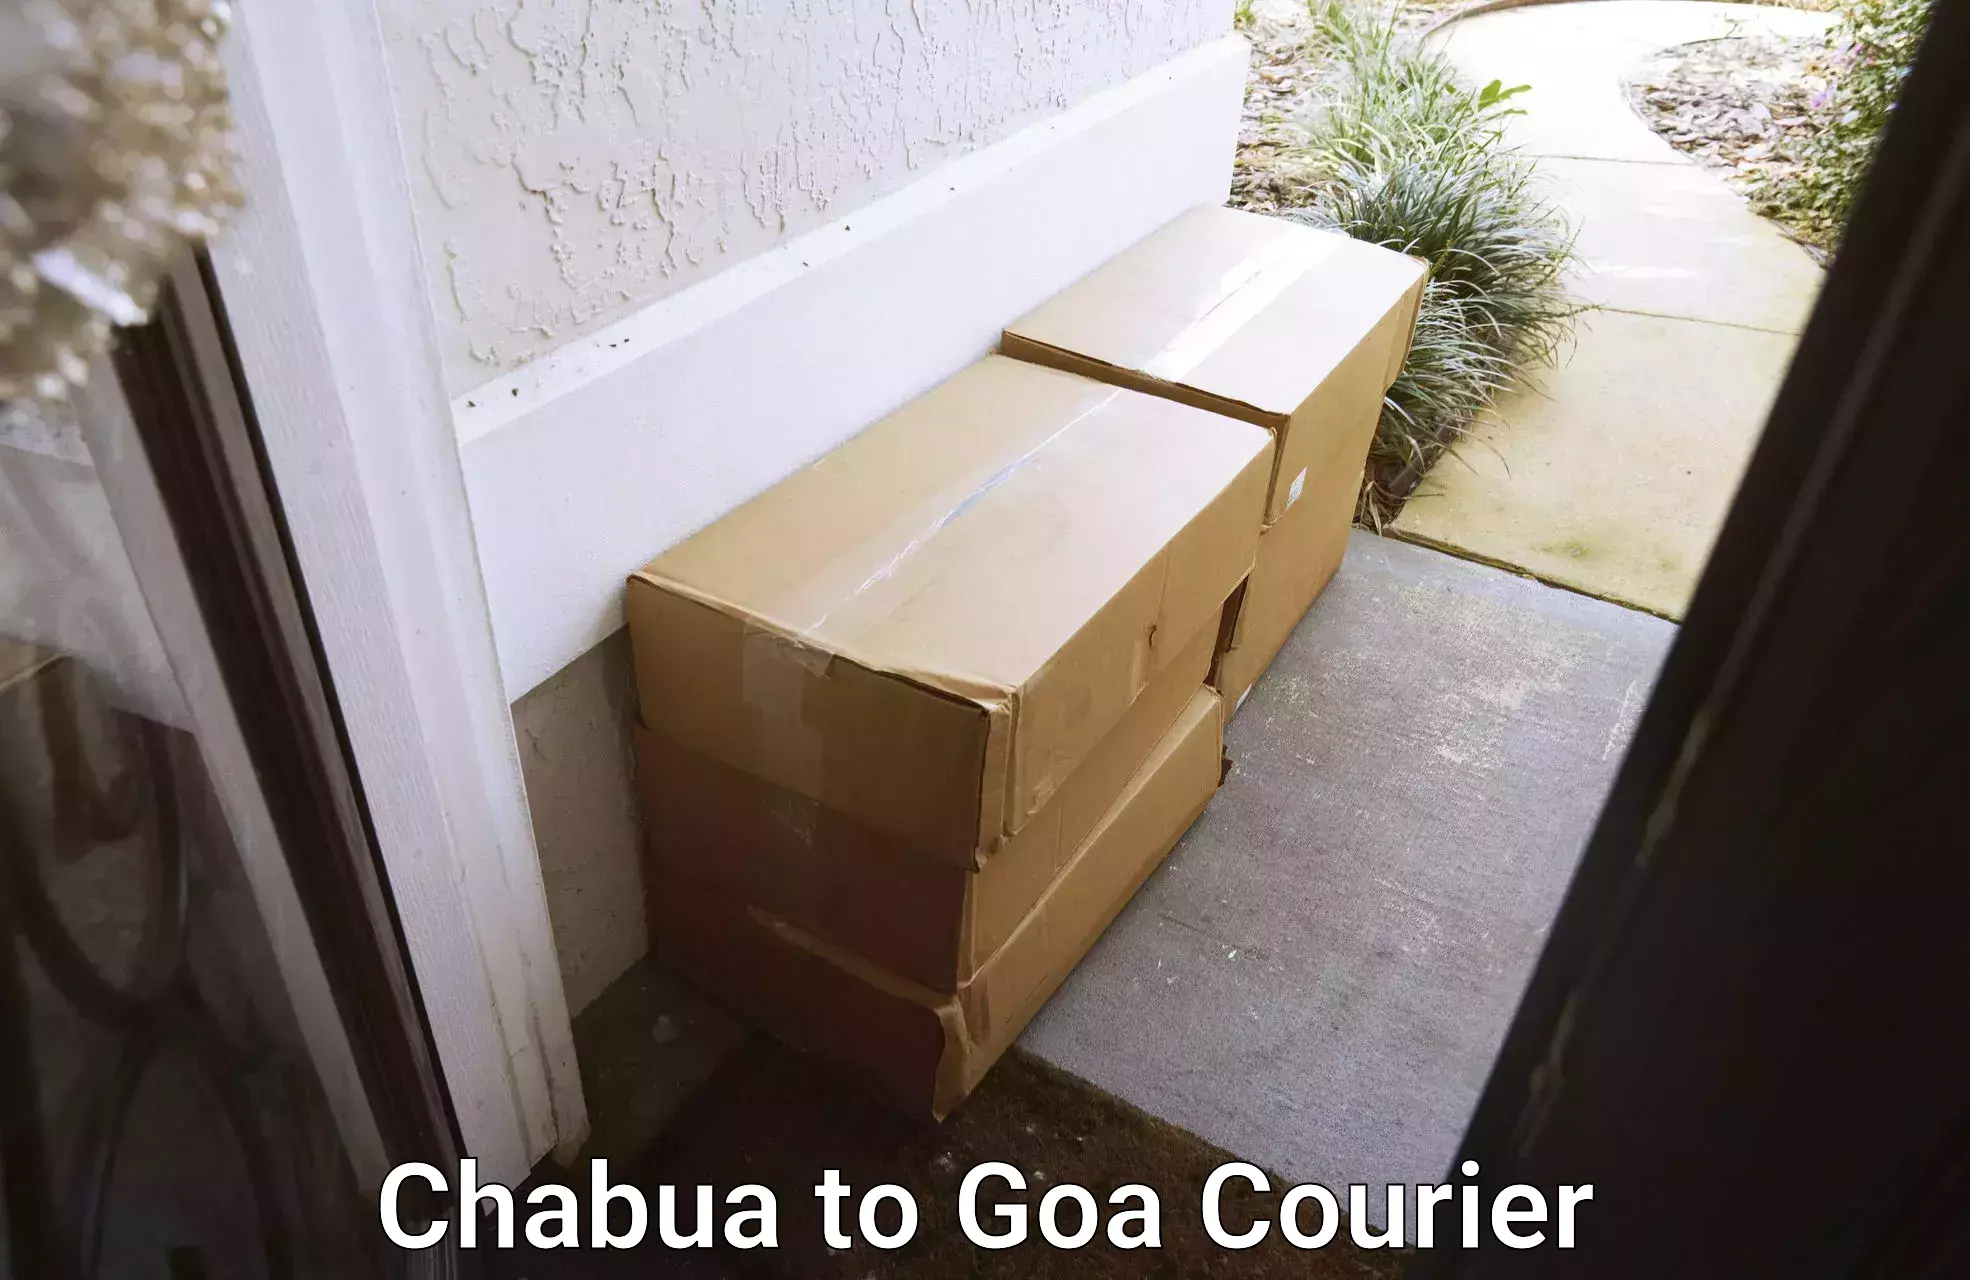 Local delivery service Chabua to Goa